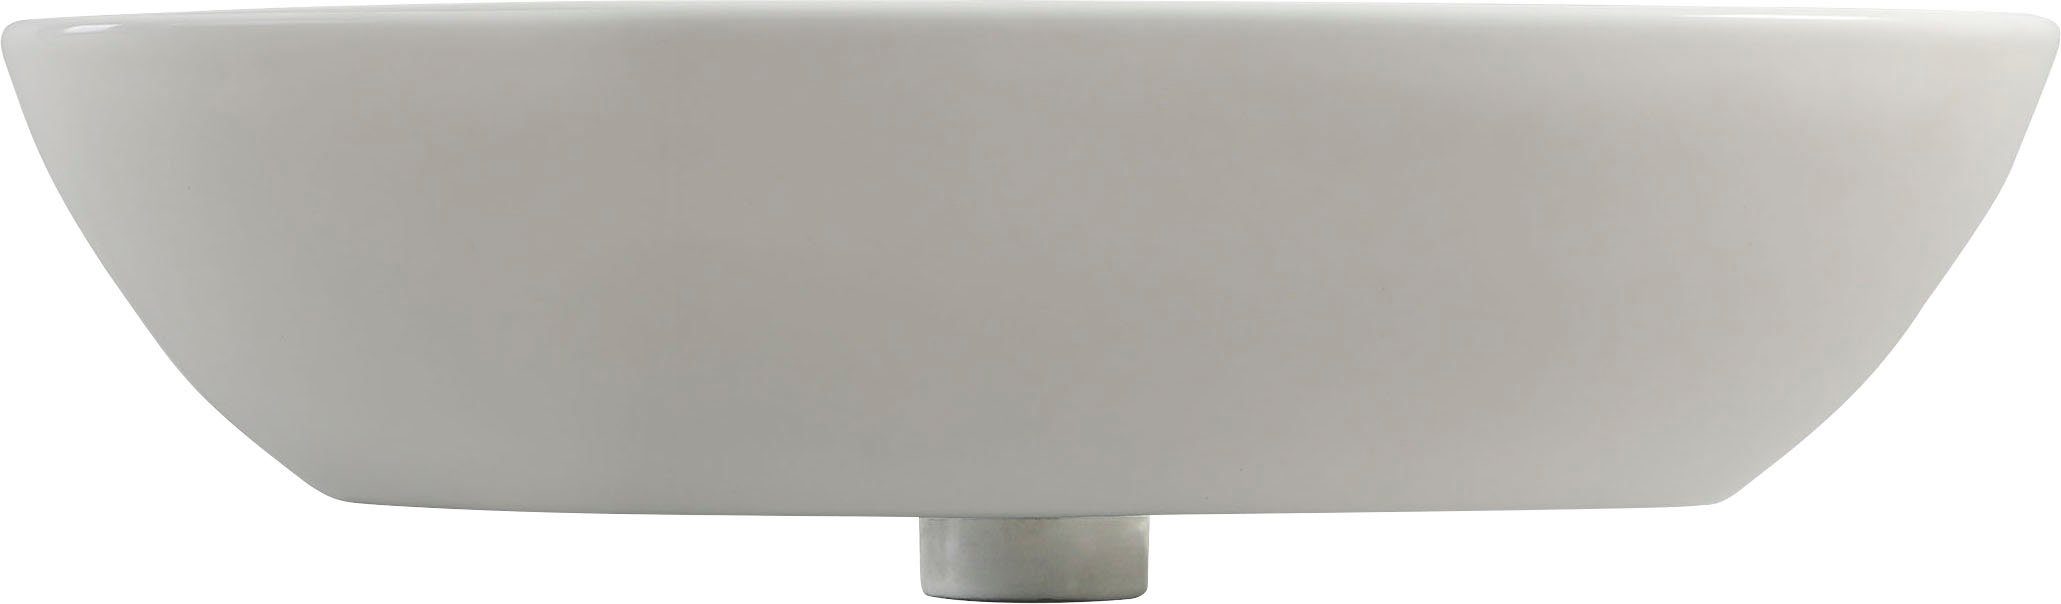 VEROSAN Waschtisch RIVO, mit Hahnloch und Überlauf, 60cm, weiß